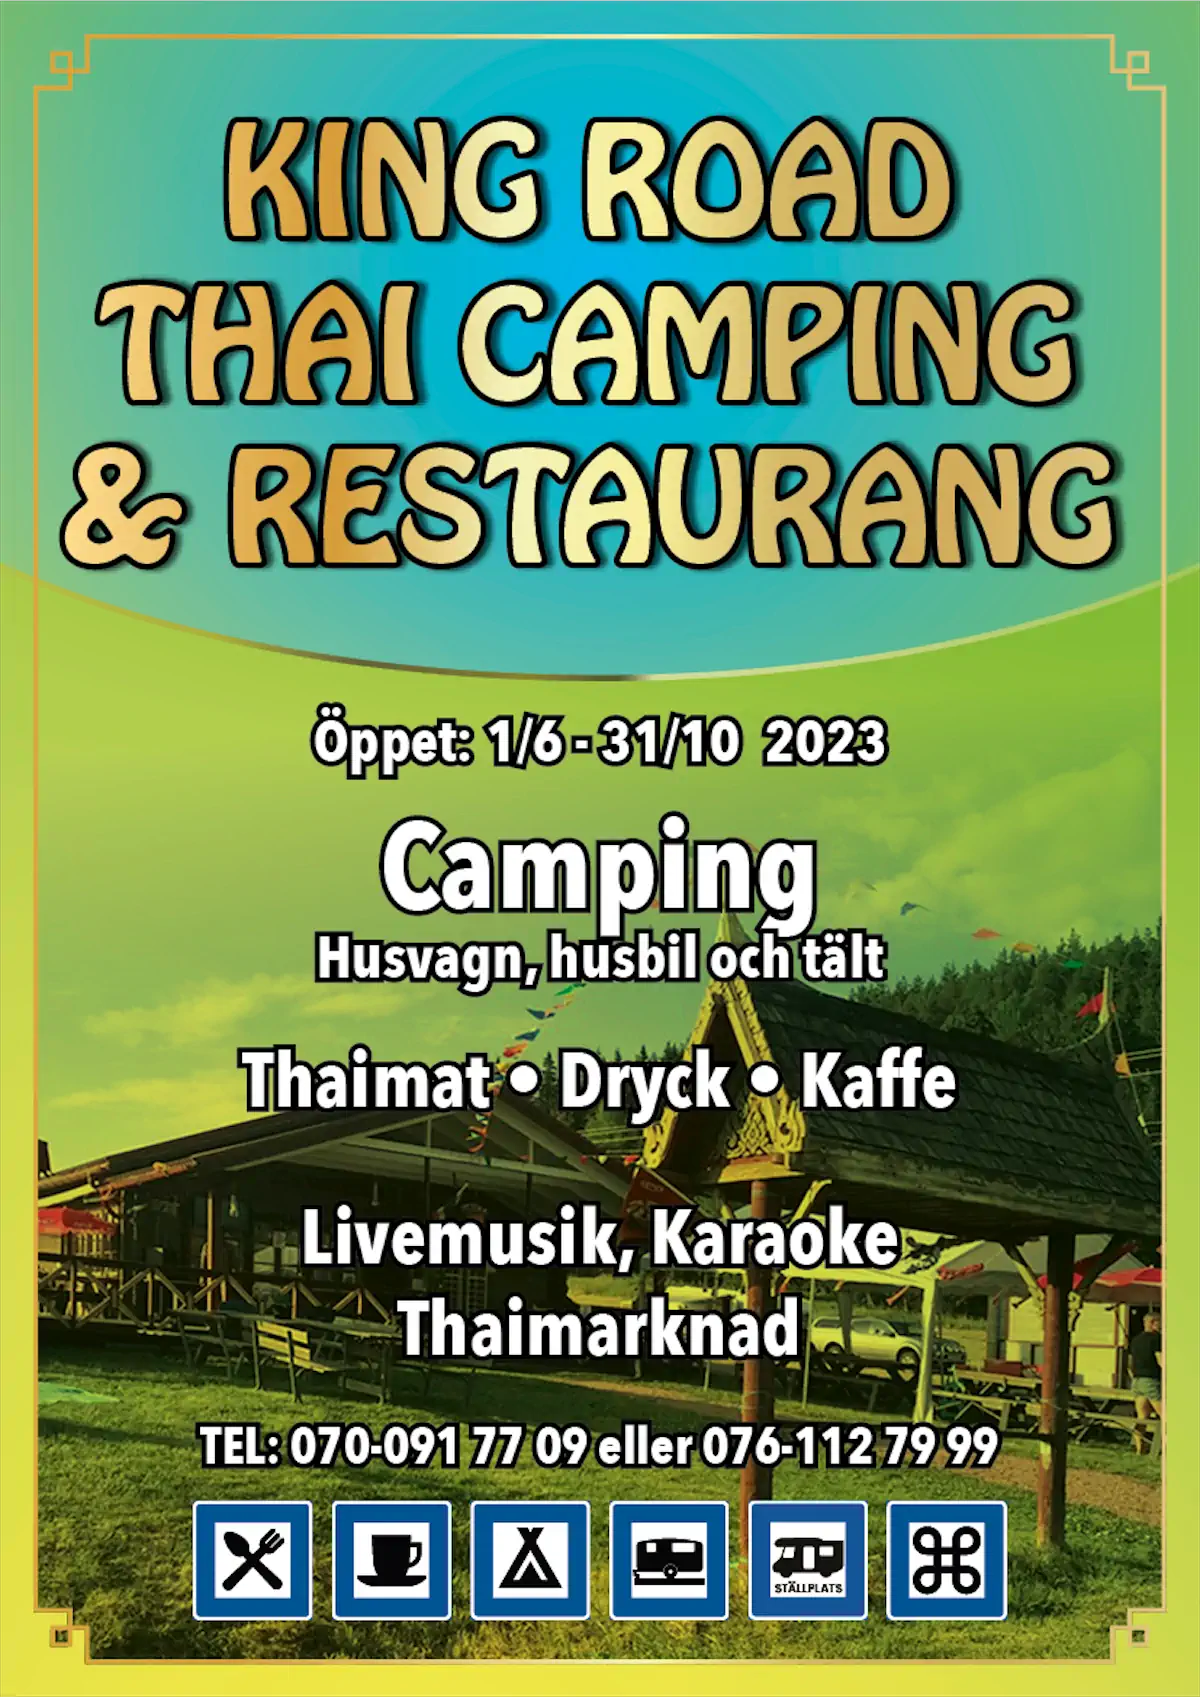 King Road Thai Camping & Restaurang